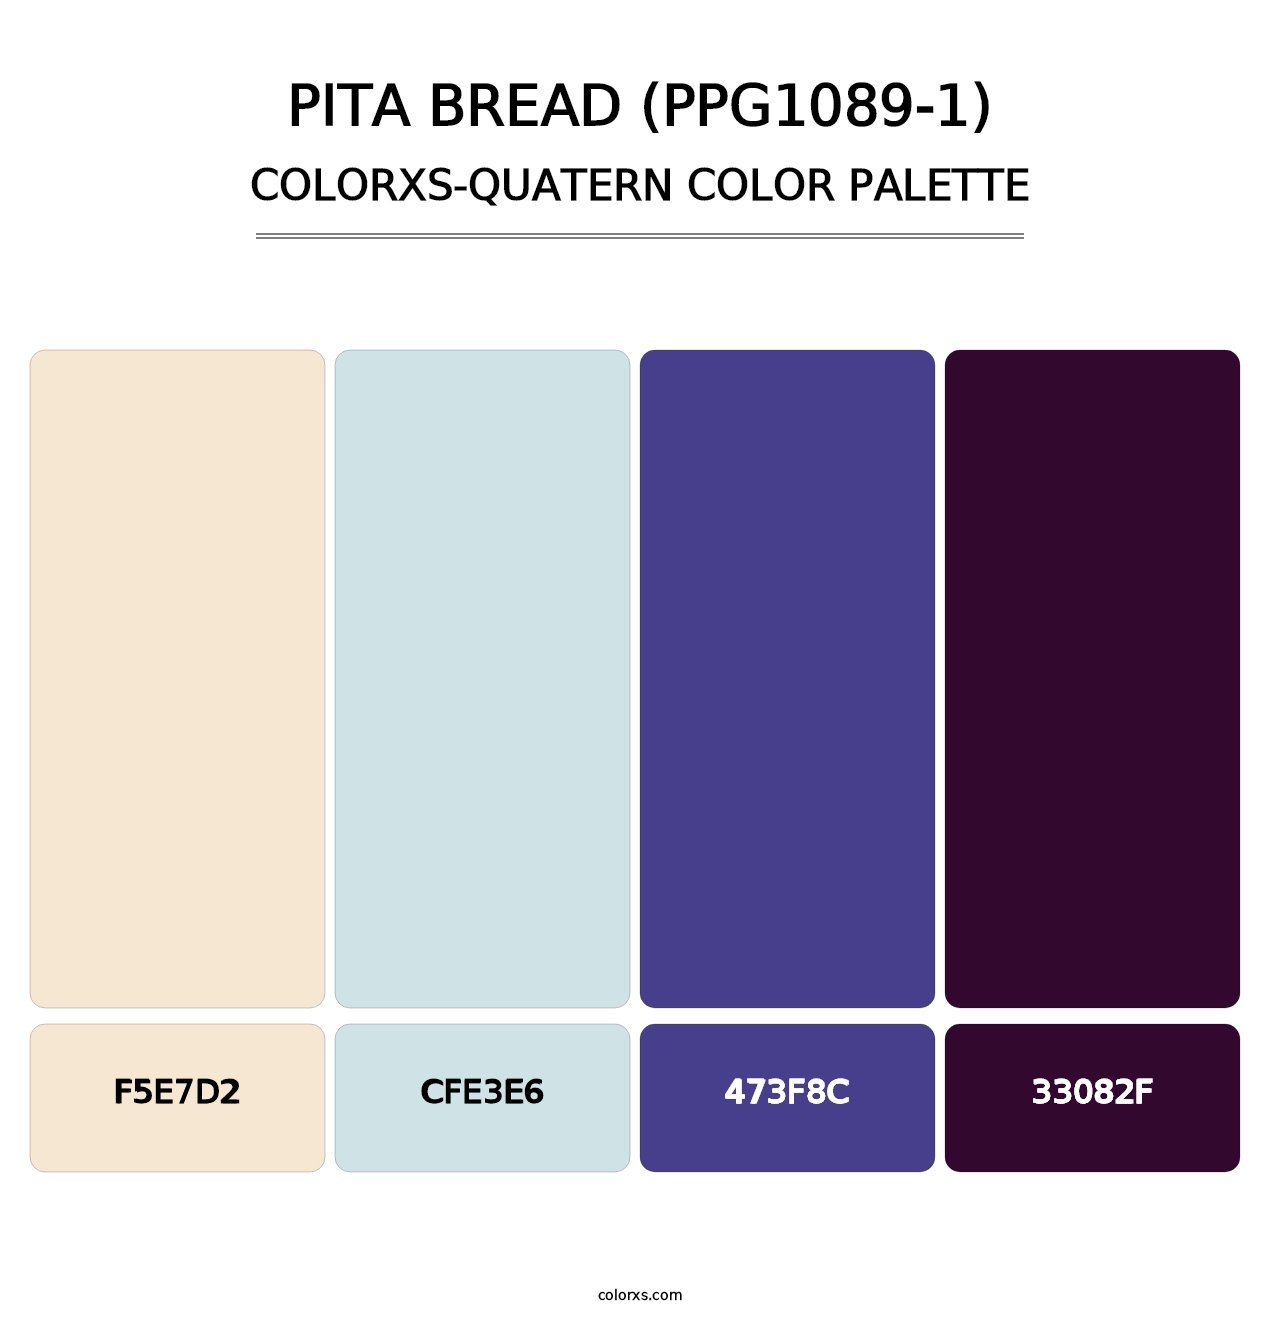 Pita Bread (PPG1089-1) - Colorxs Quatern Palette